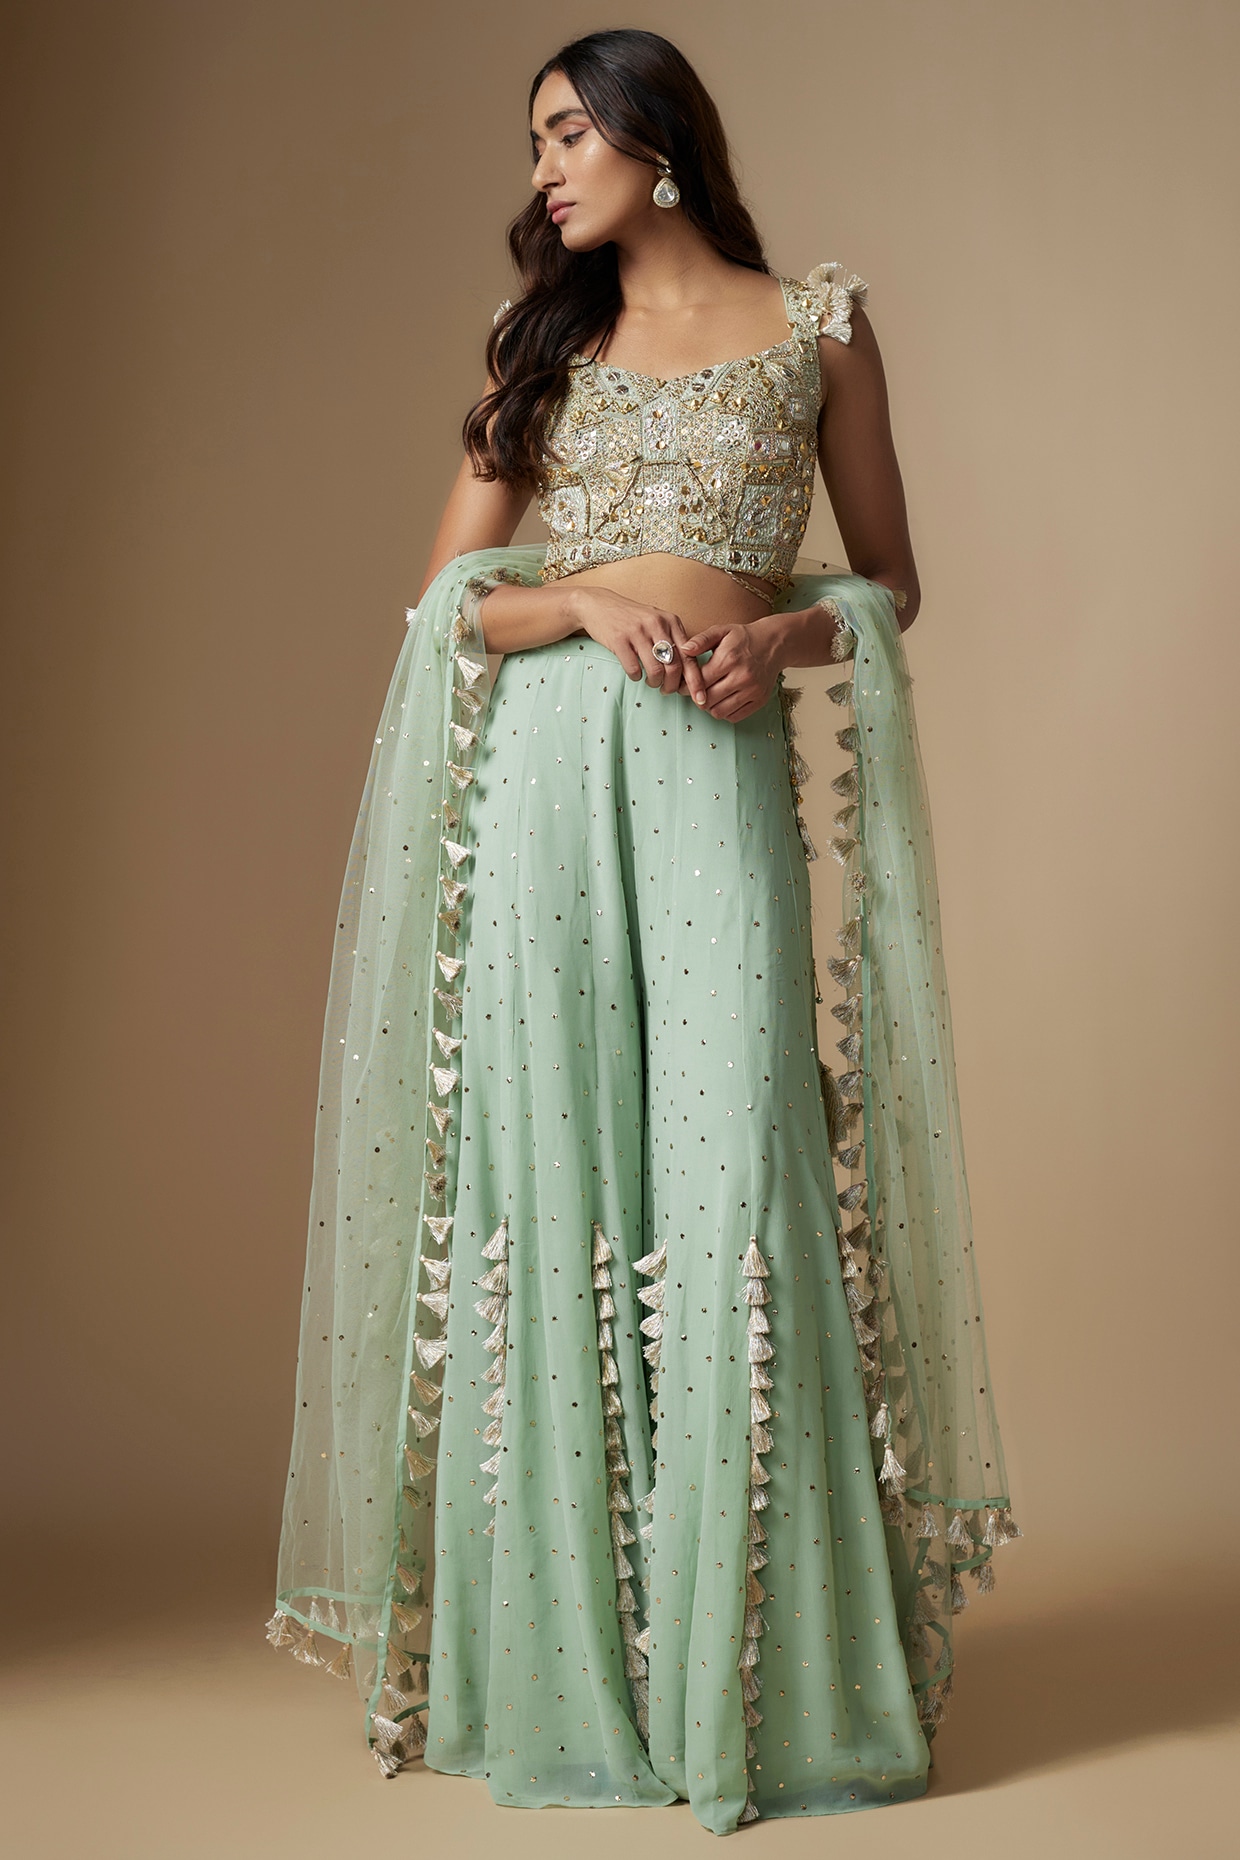 Plus Size Indian Clothing For Women Online | Lehenga Choli